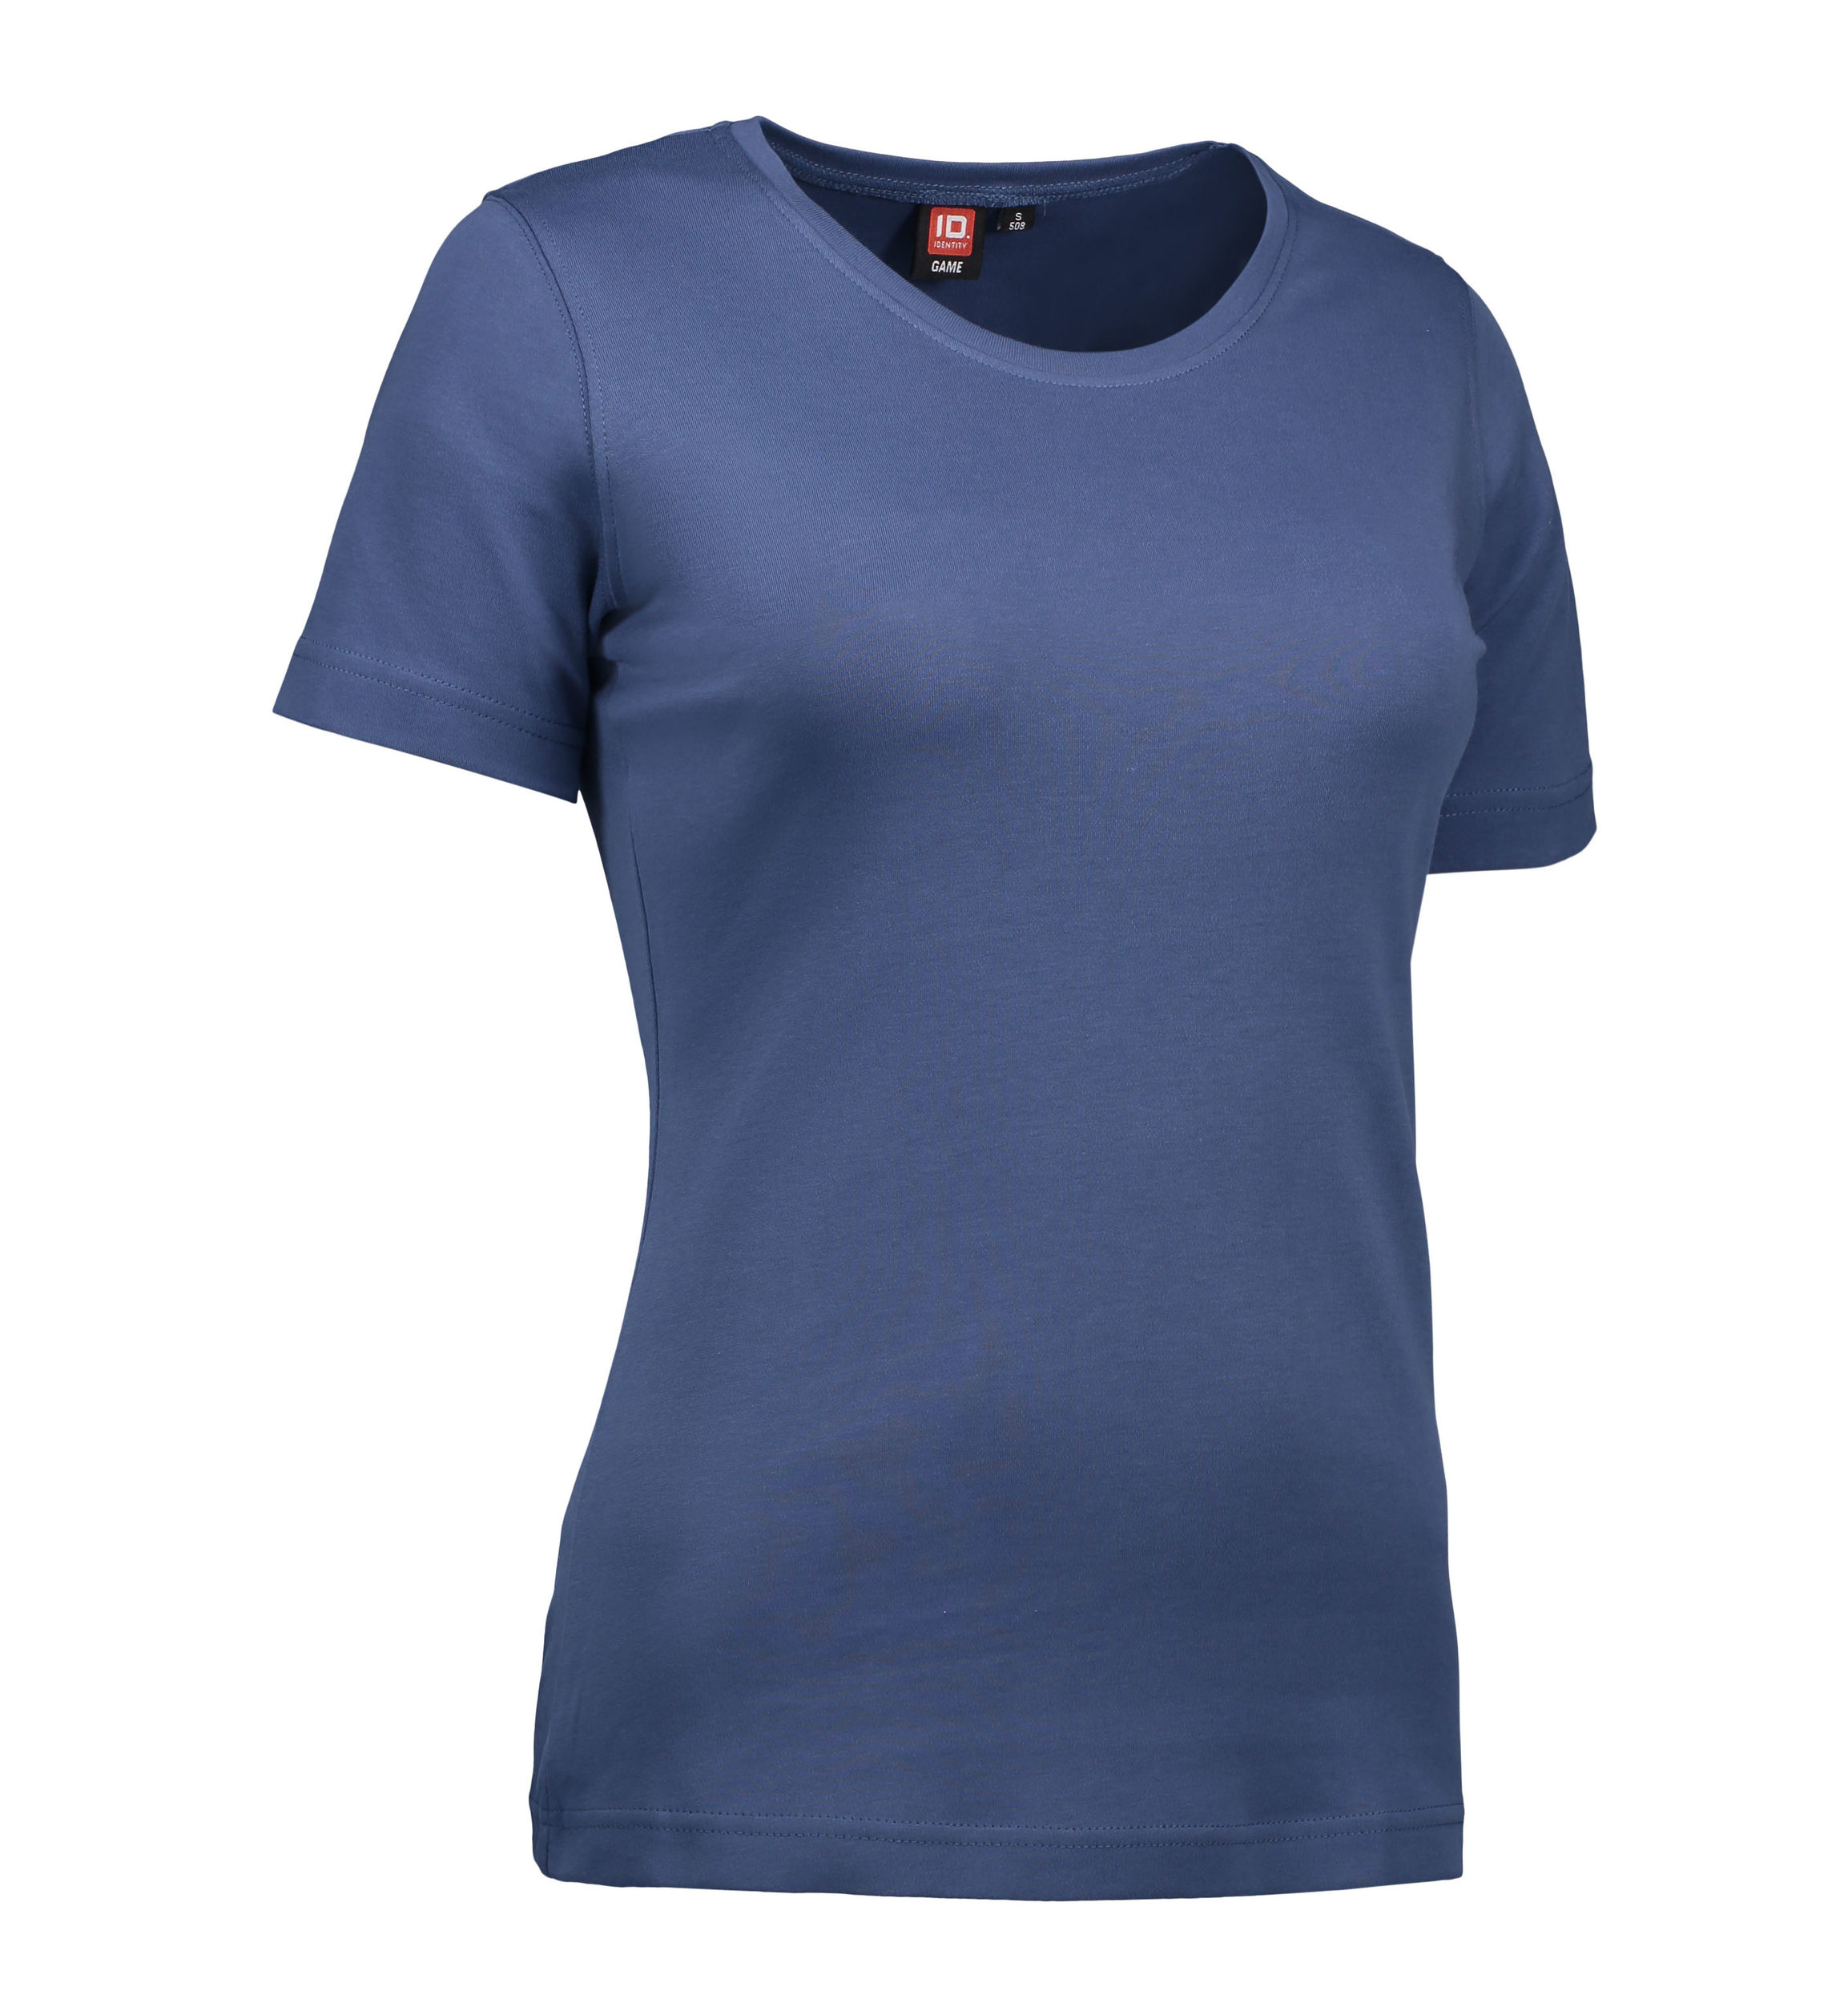 Billede af Indigo farvet t-shirt med rund hals til damer - S hos Sygeplejebutikken.dk